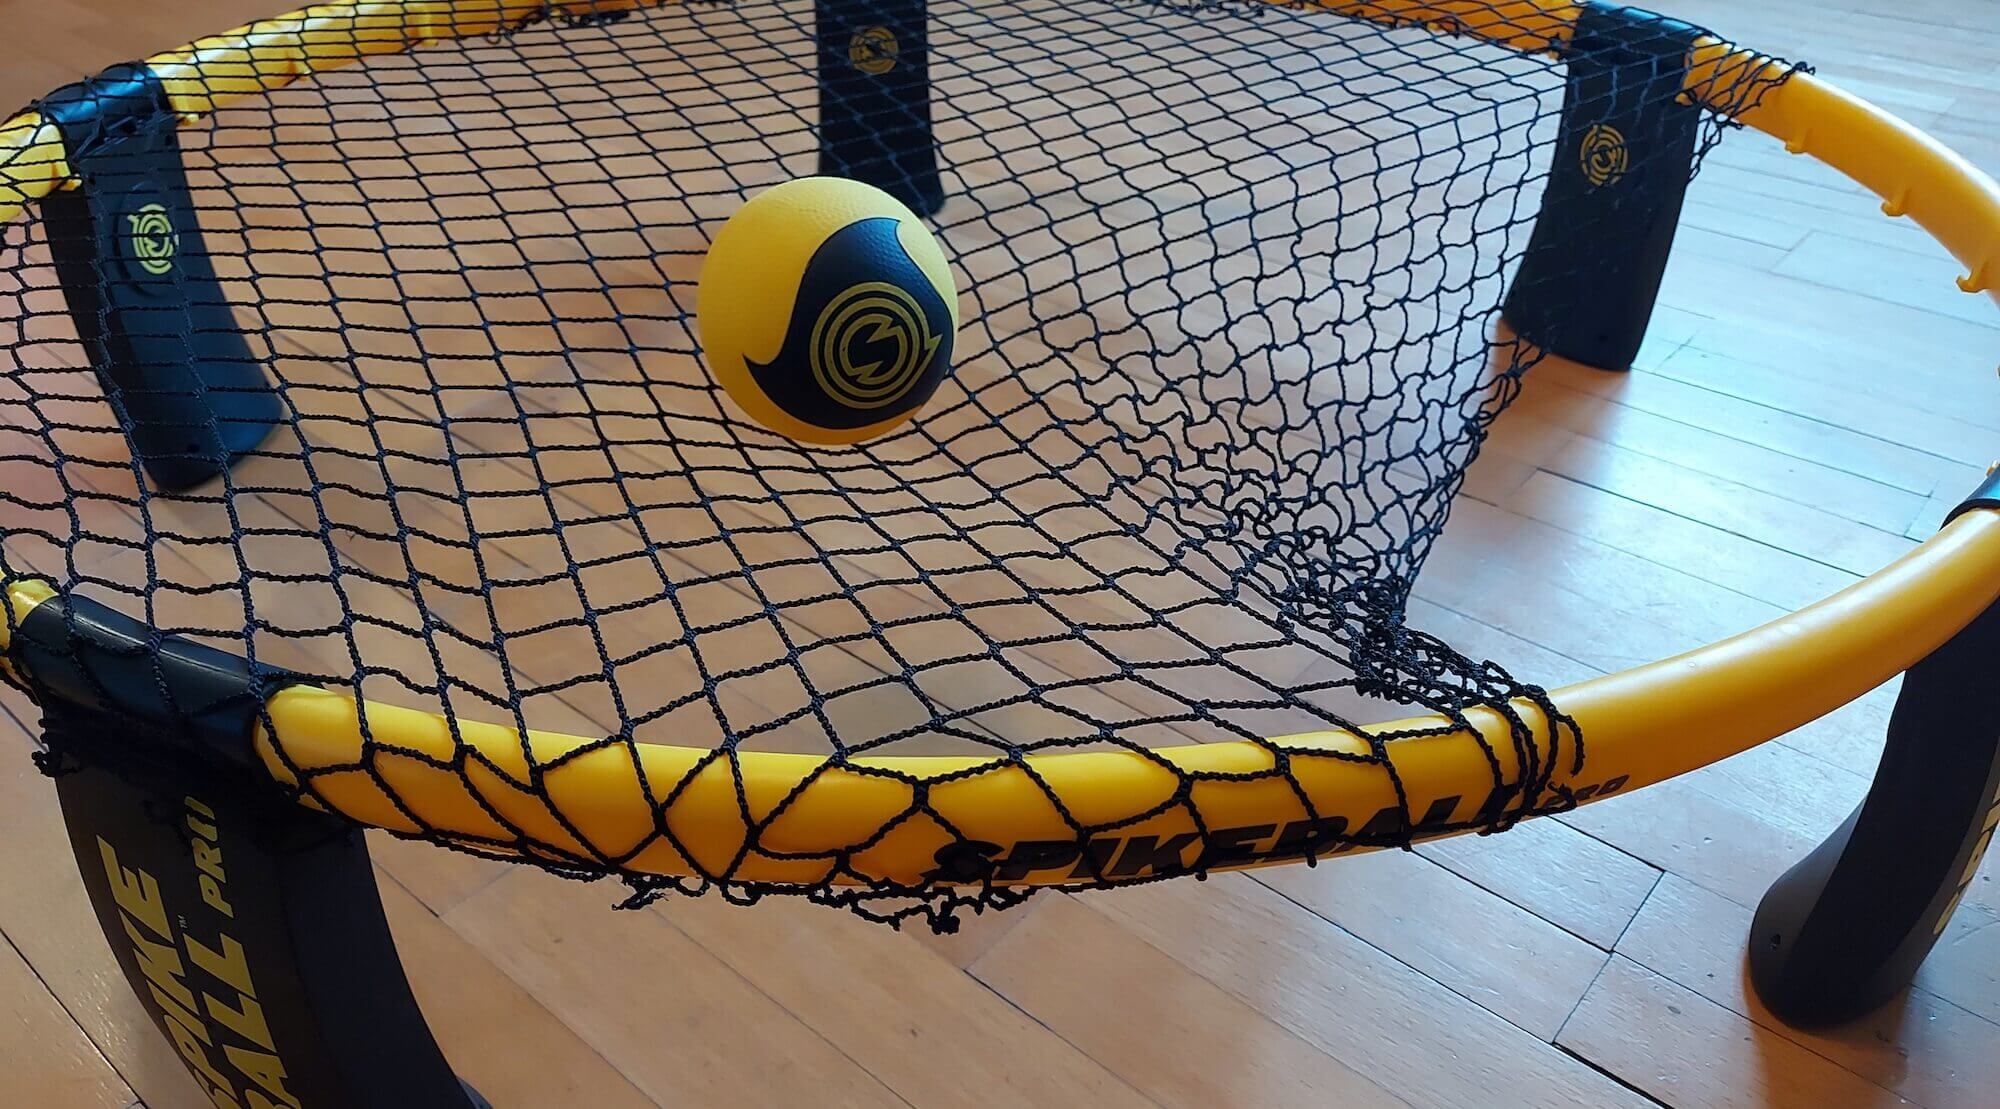 Spikeball net, Netz gespannt, Spikeball roundnet, Sports equipment, 2000x1110 HD Desktop